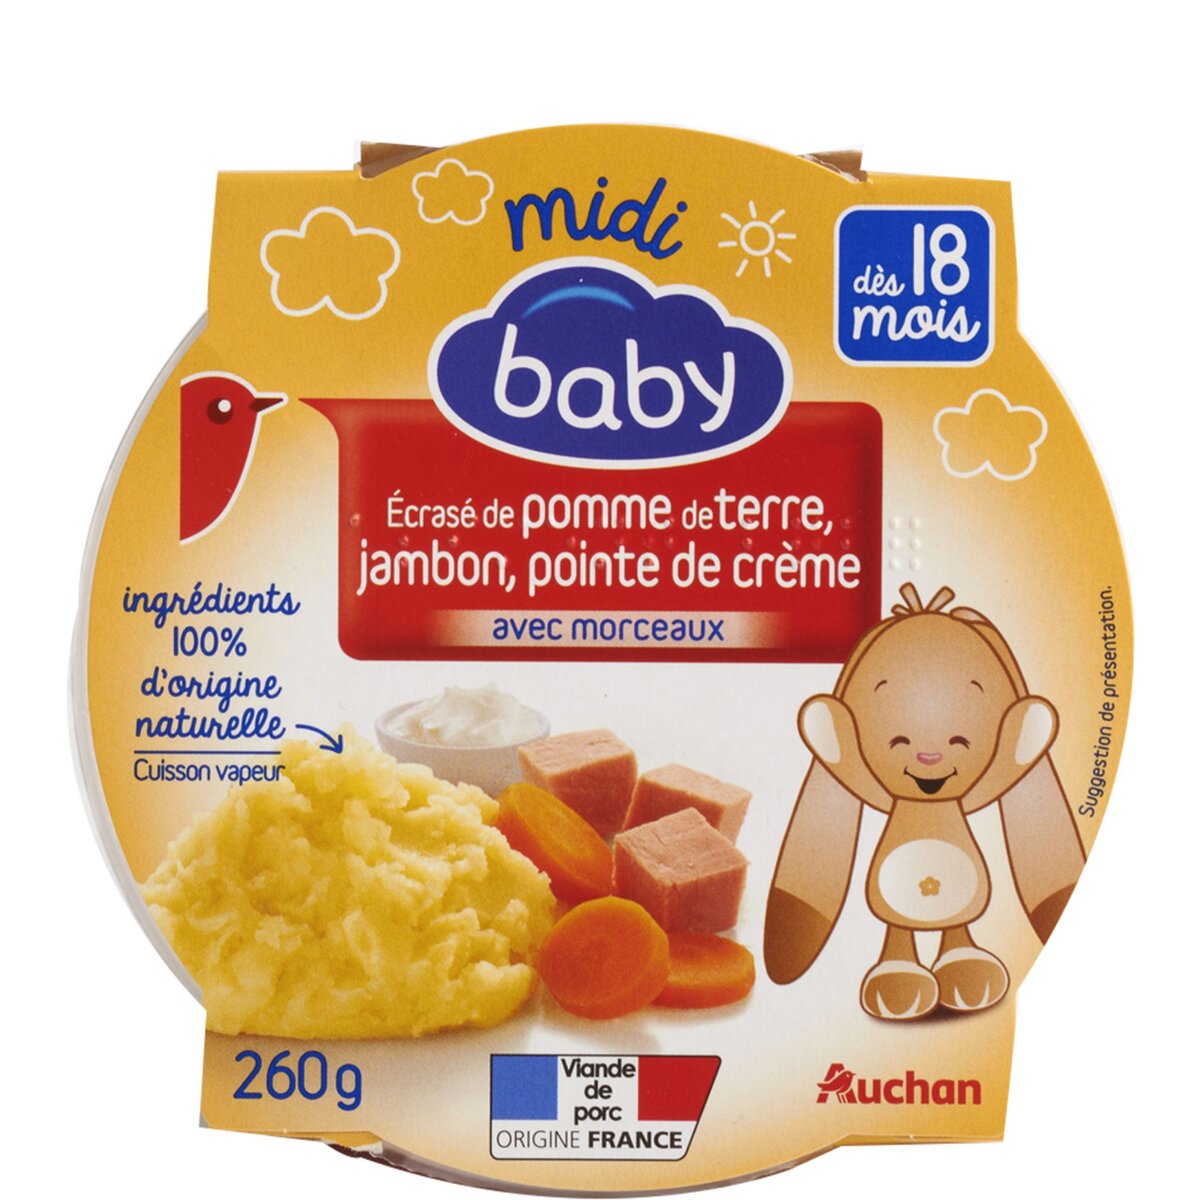 AUCHAN BABY Auchan baby Assiette écrasé de pomme de terre jambon crème dès 18 mois 260g 260g